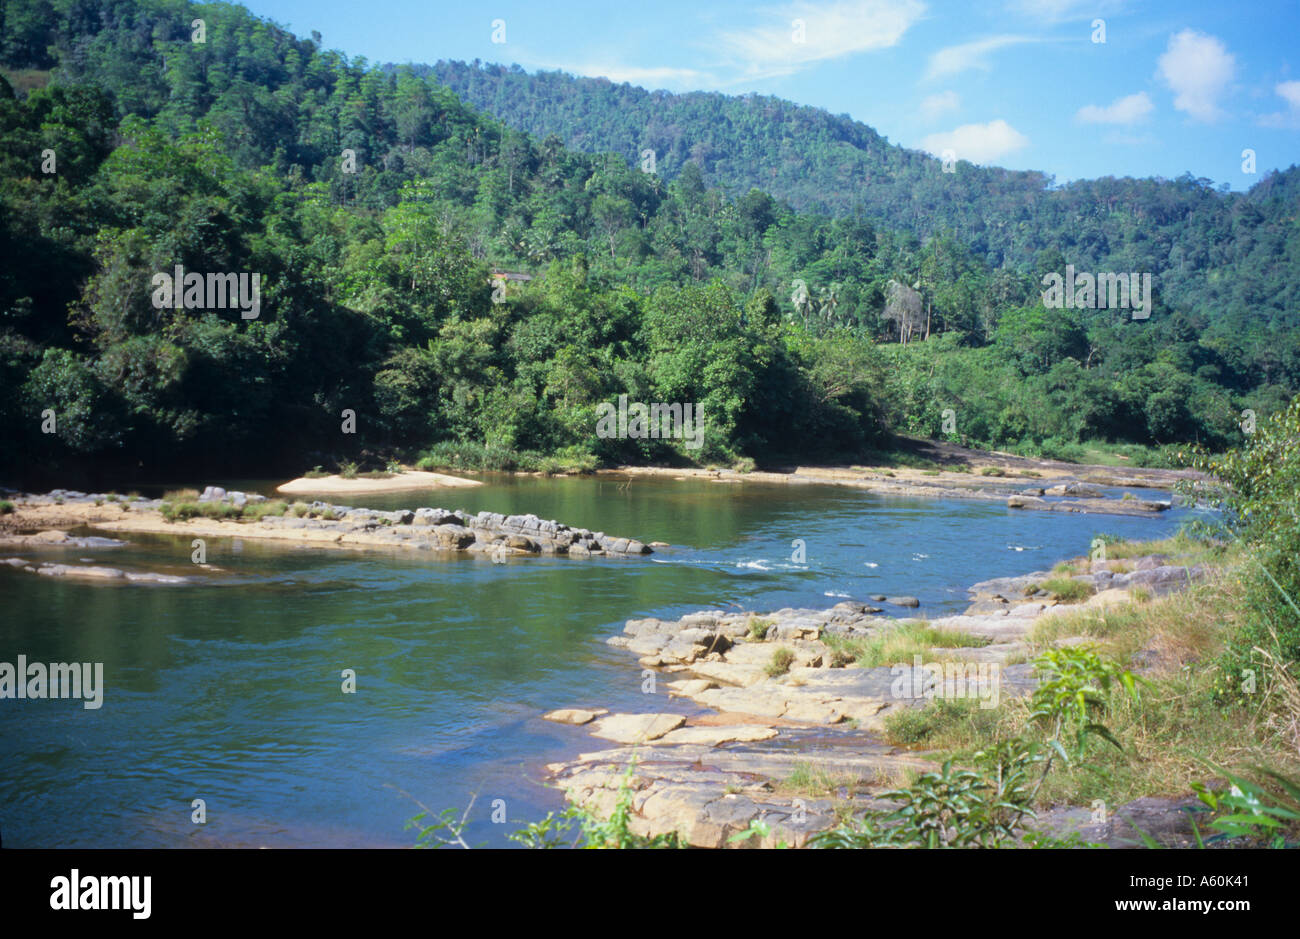 Lage am Fluss Kelani in Sri Lanka, wo der berühmte David Lean-Film die Brücke am River Kwai gedreht wurde Stockfoto